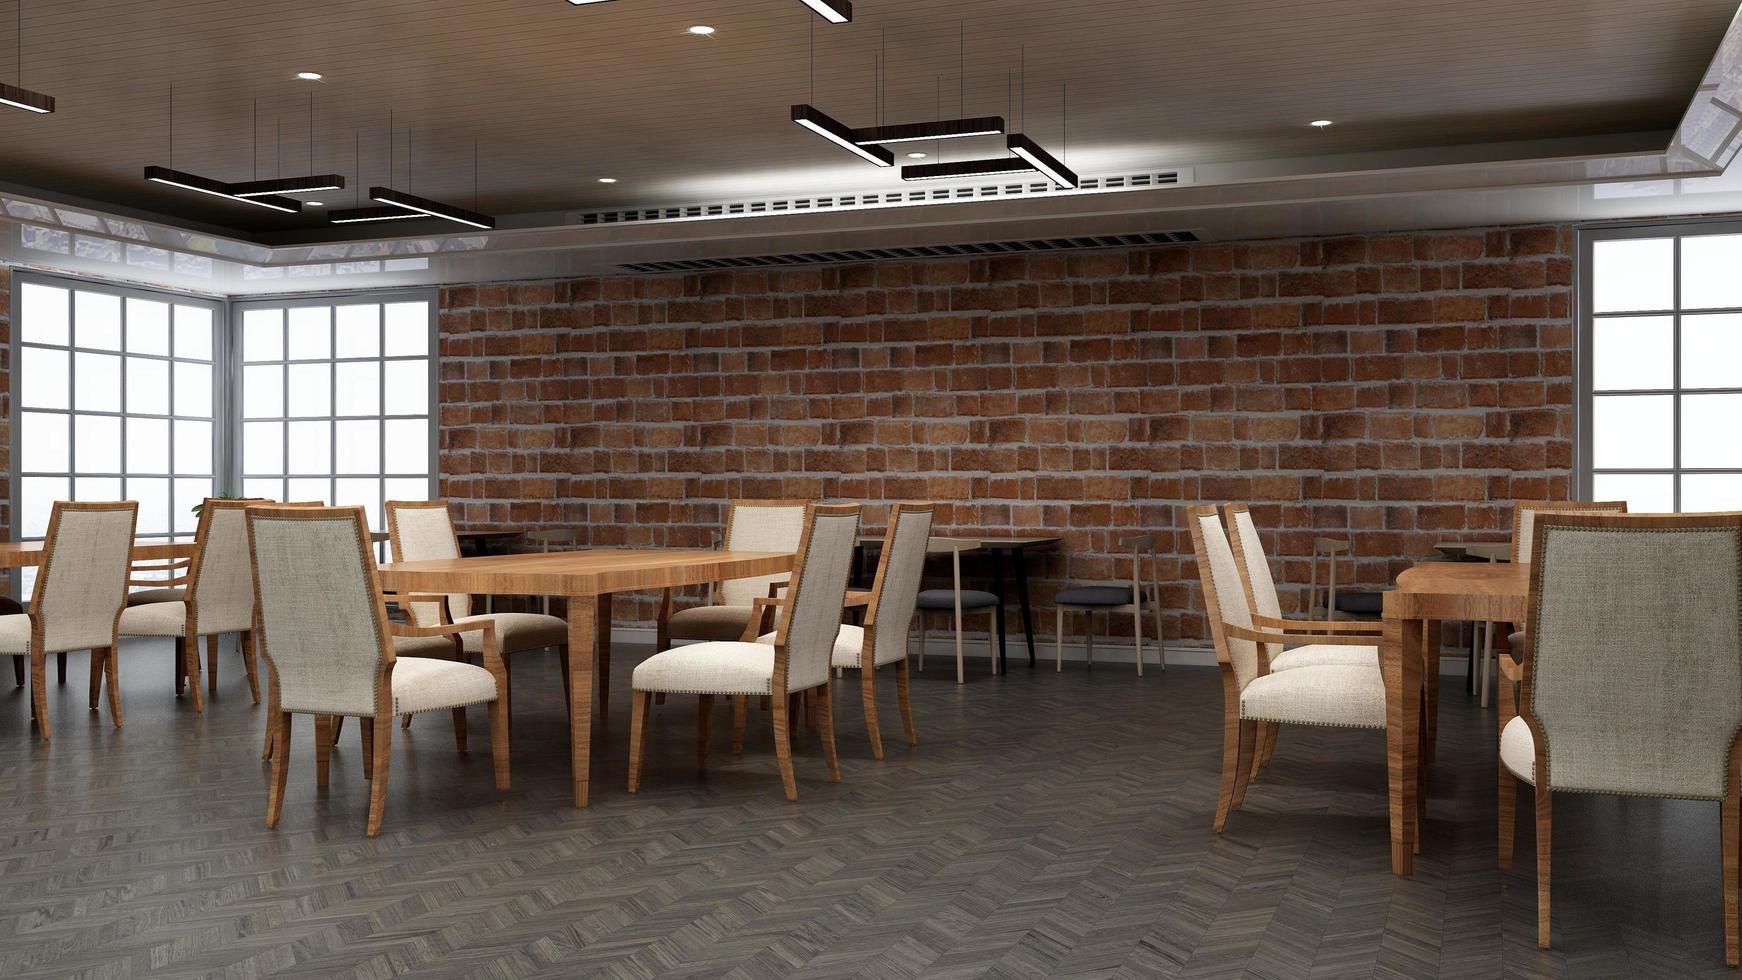 3d render restaurante o cafetería para maqueta de logotipo con pared de ladrillo foto